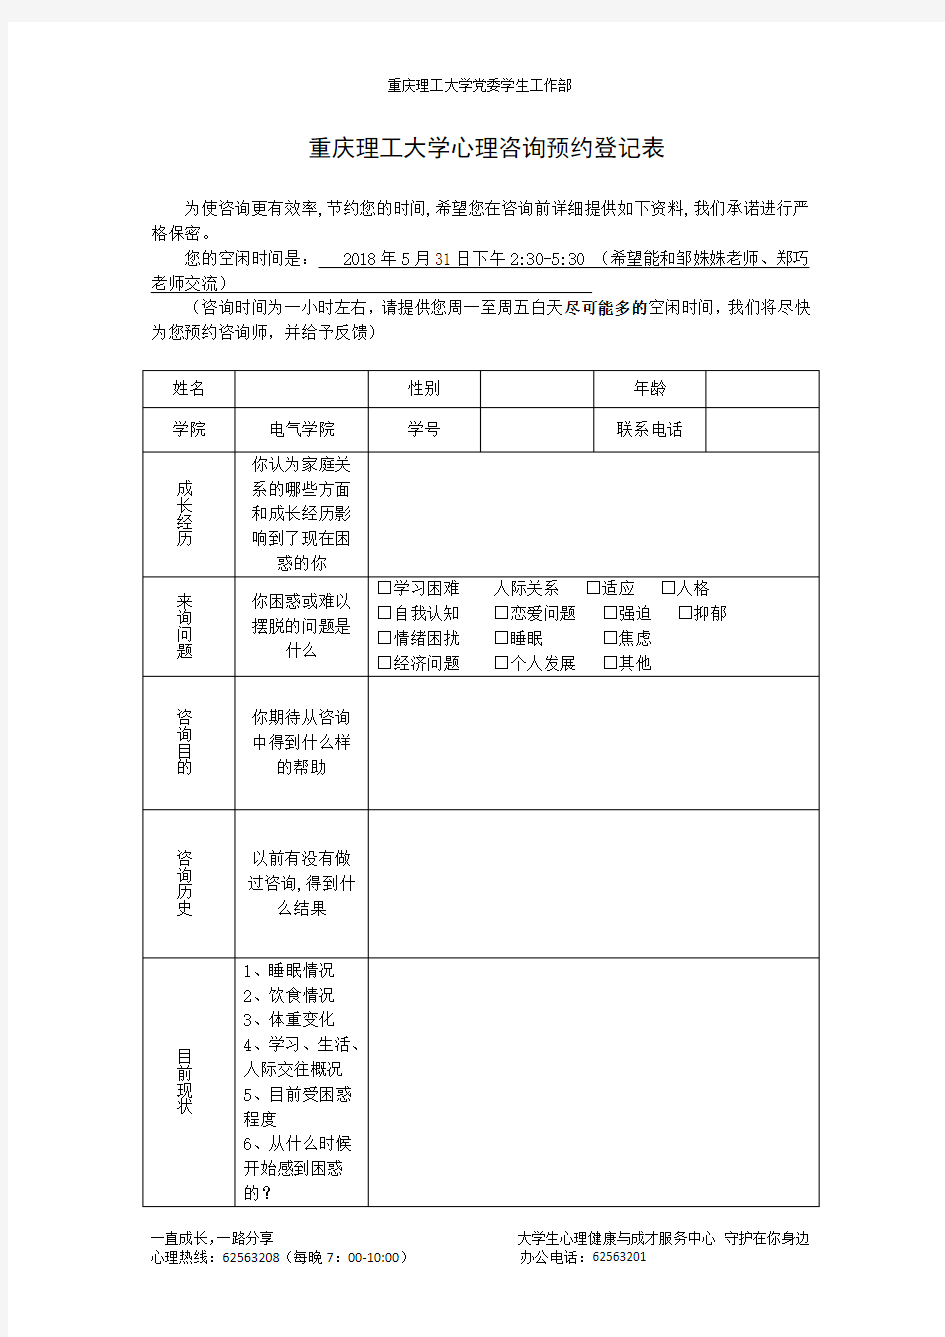 重庆理工大学心理咨询预约登记表(1)